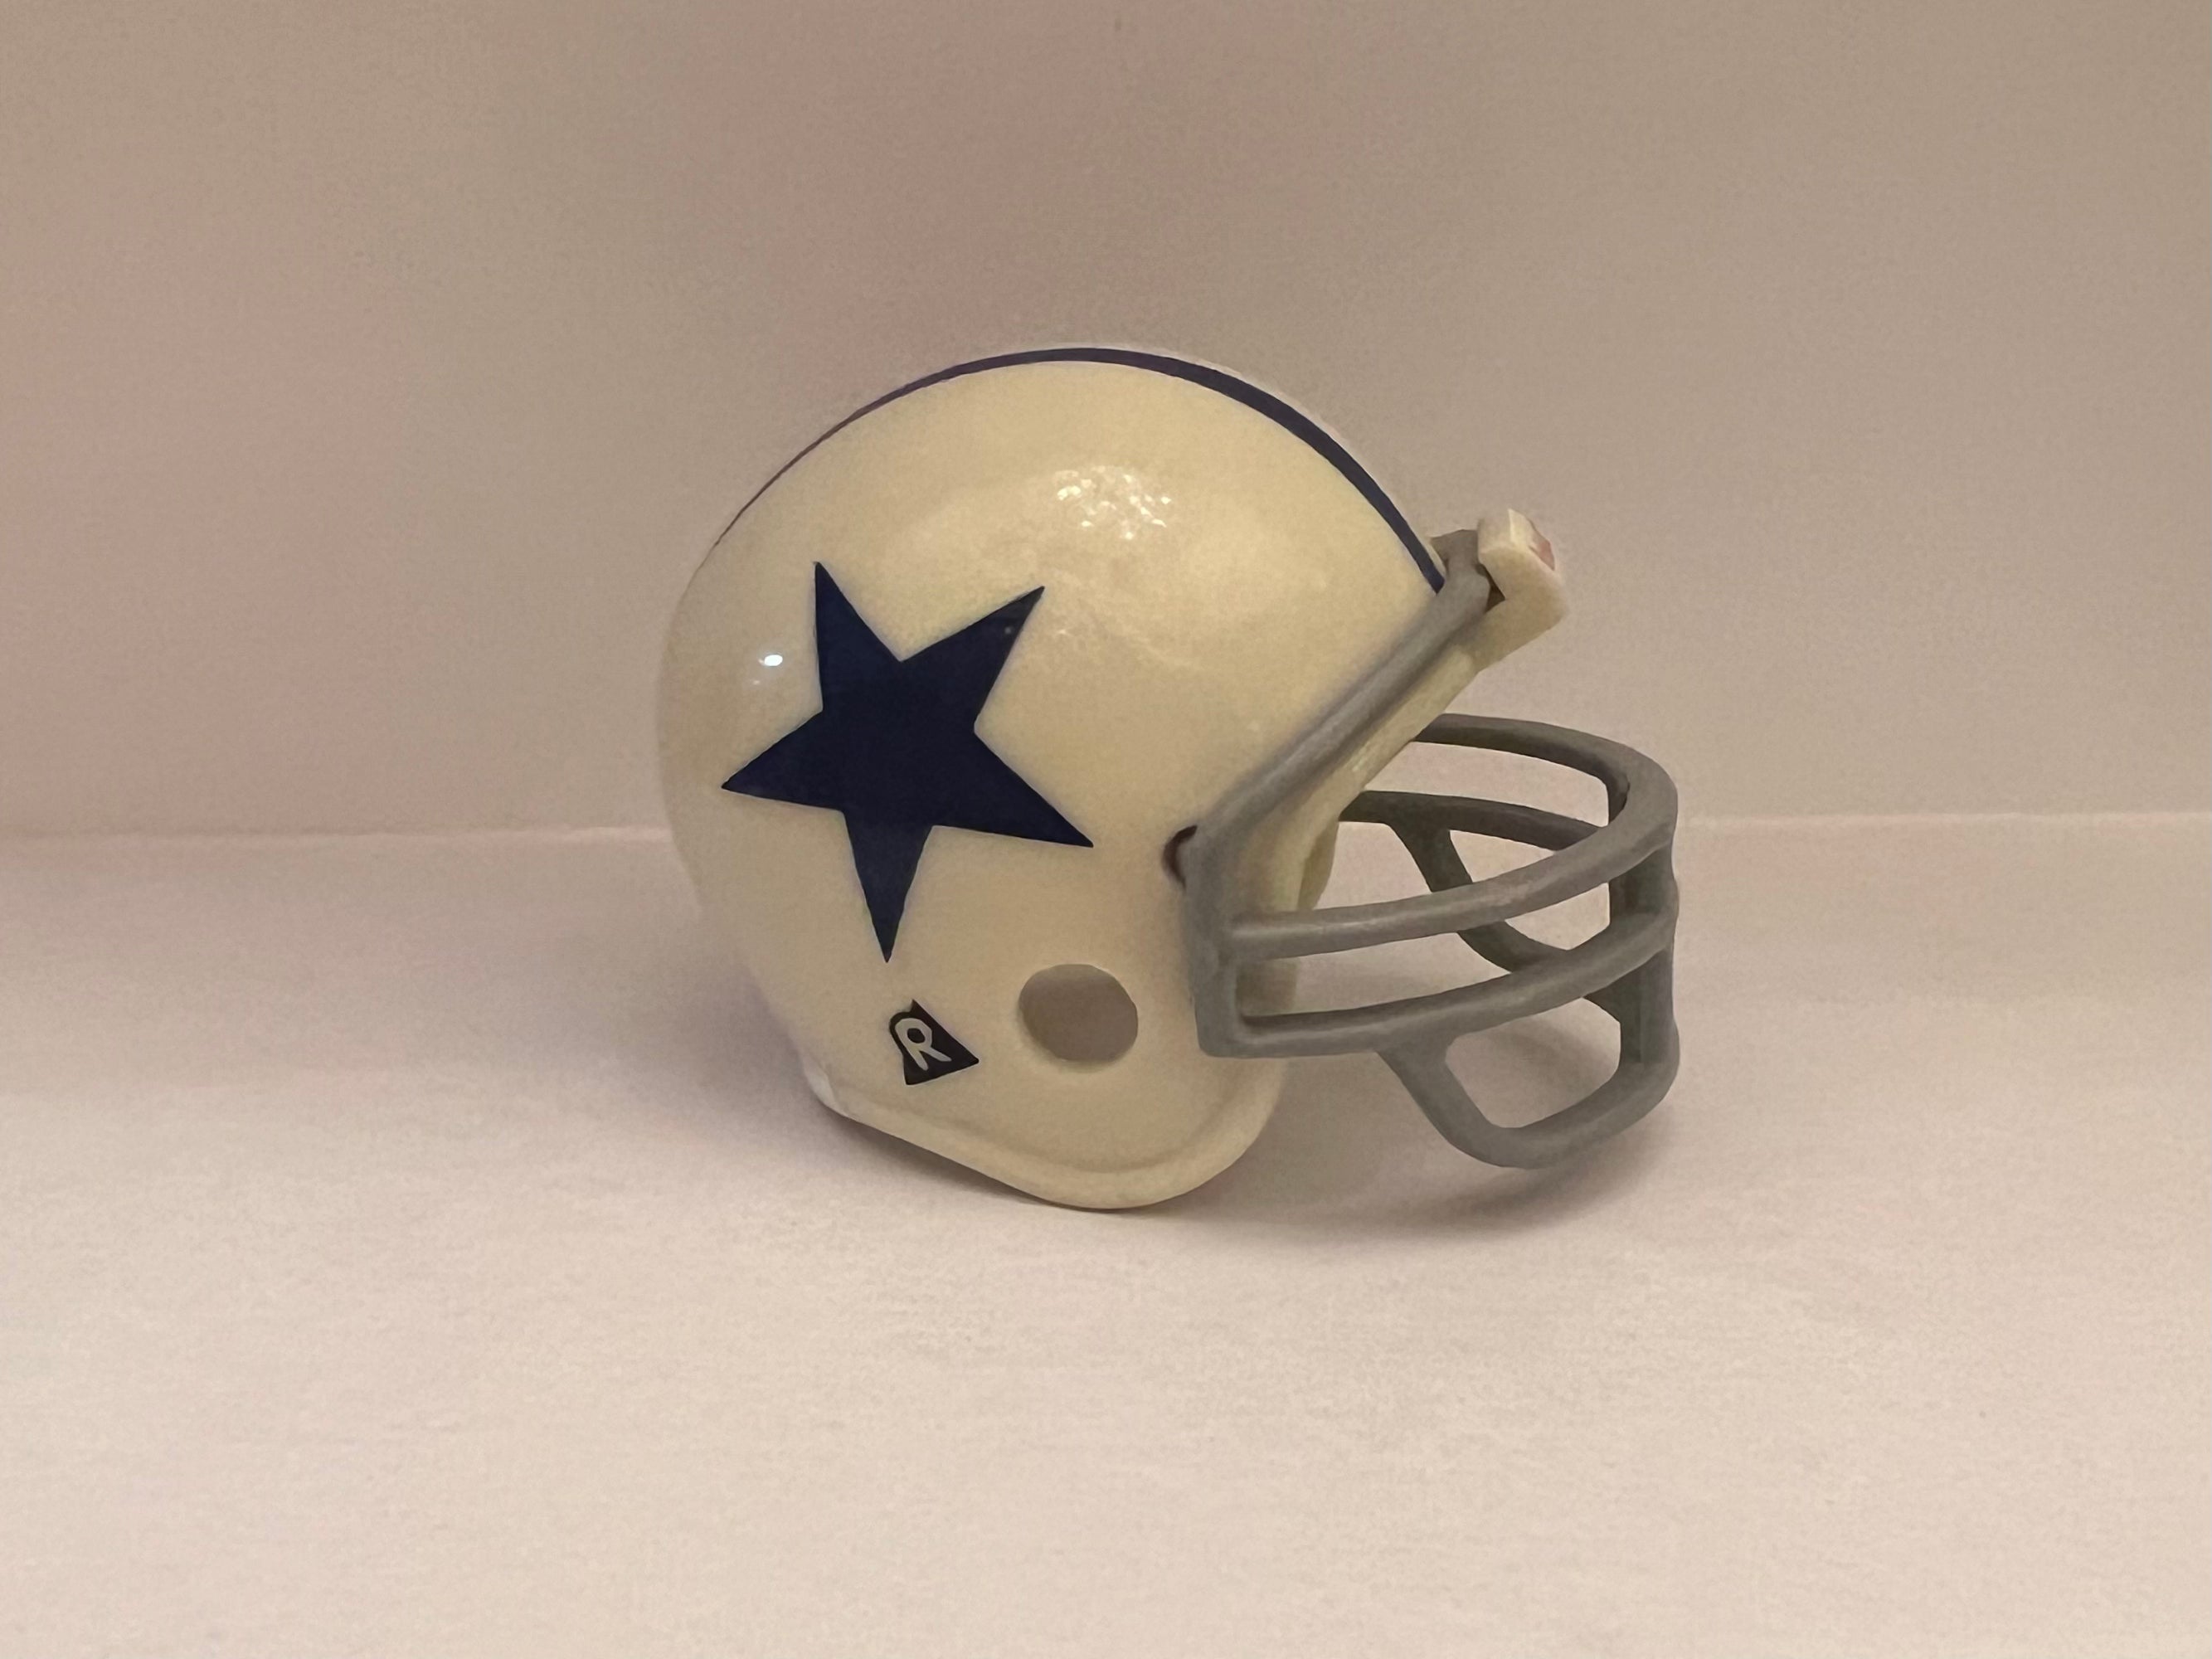 1960 dallas cowboys helmet